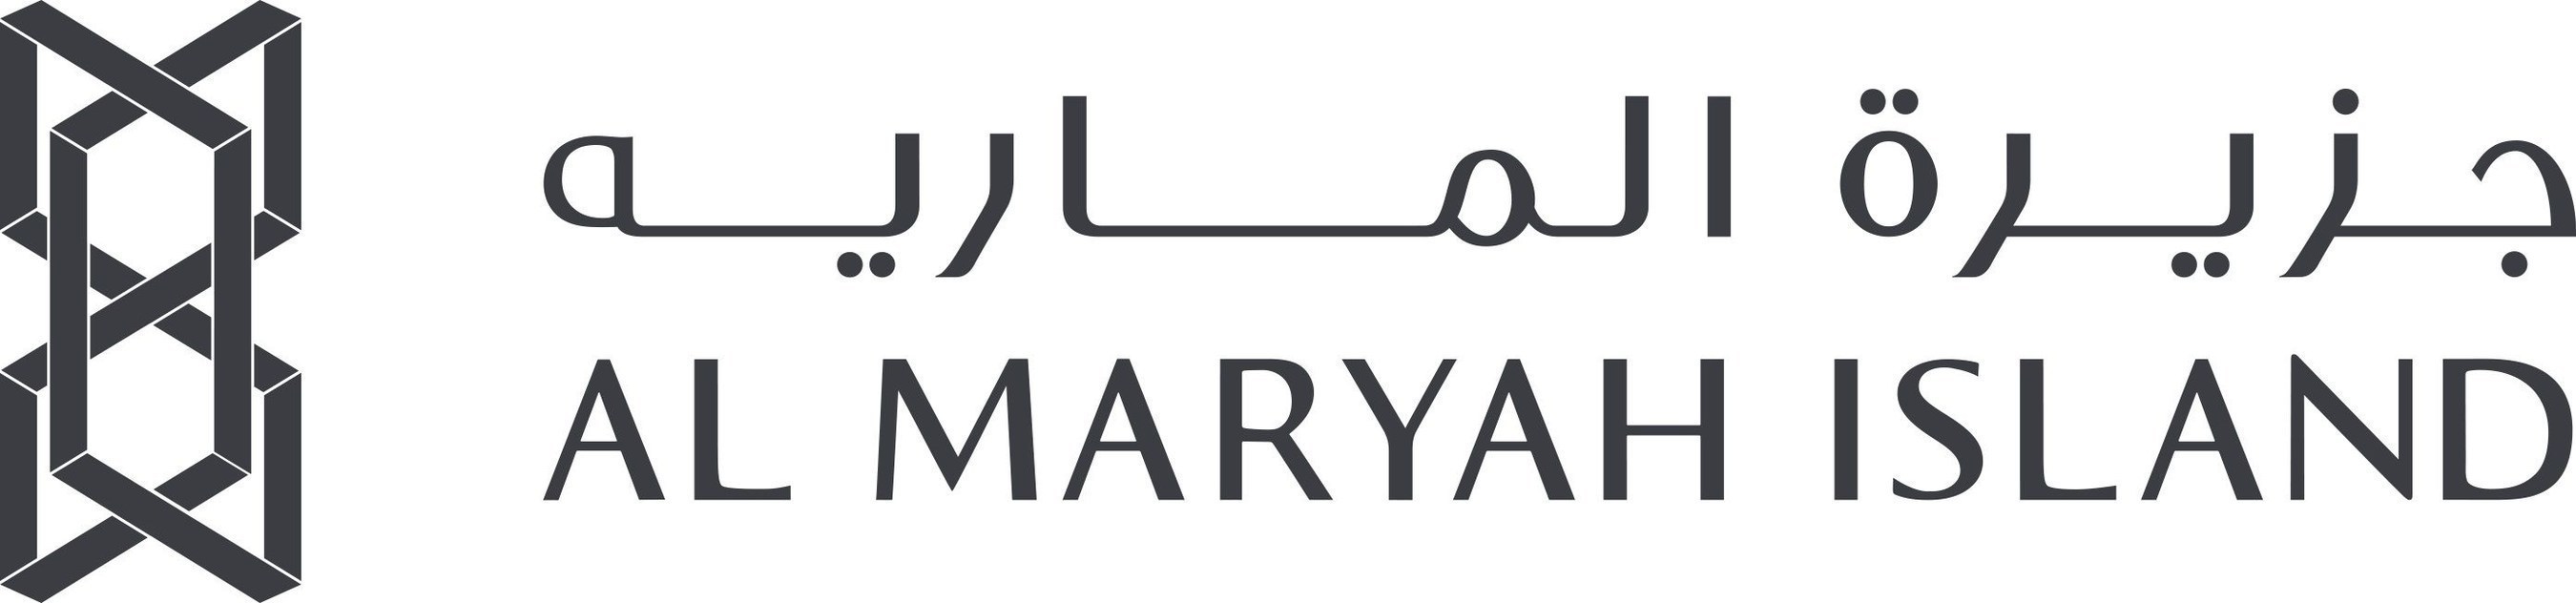 Al Maryah Island (PRNewsFoto/Al Maryah Island) (PRNewsFoto/Al Maryah Island)